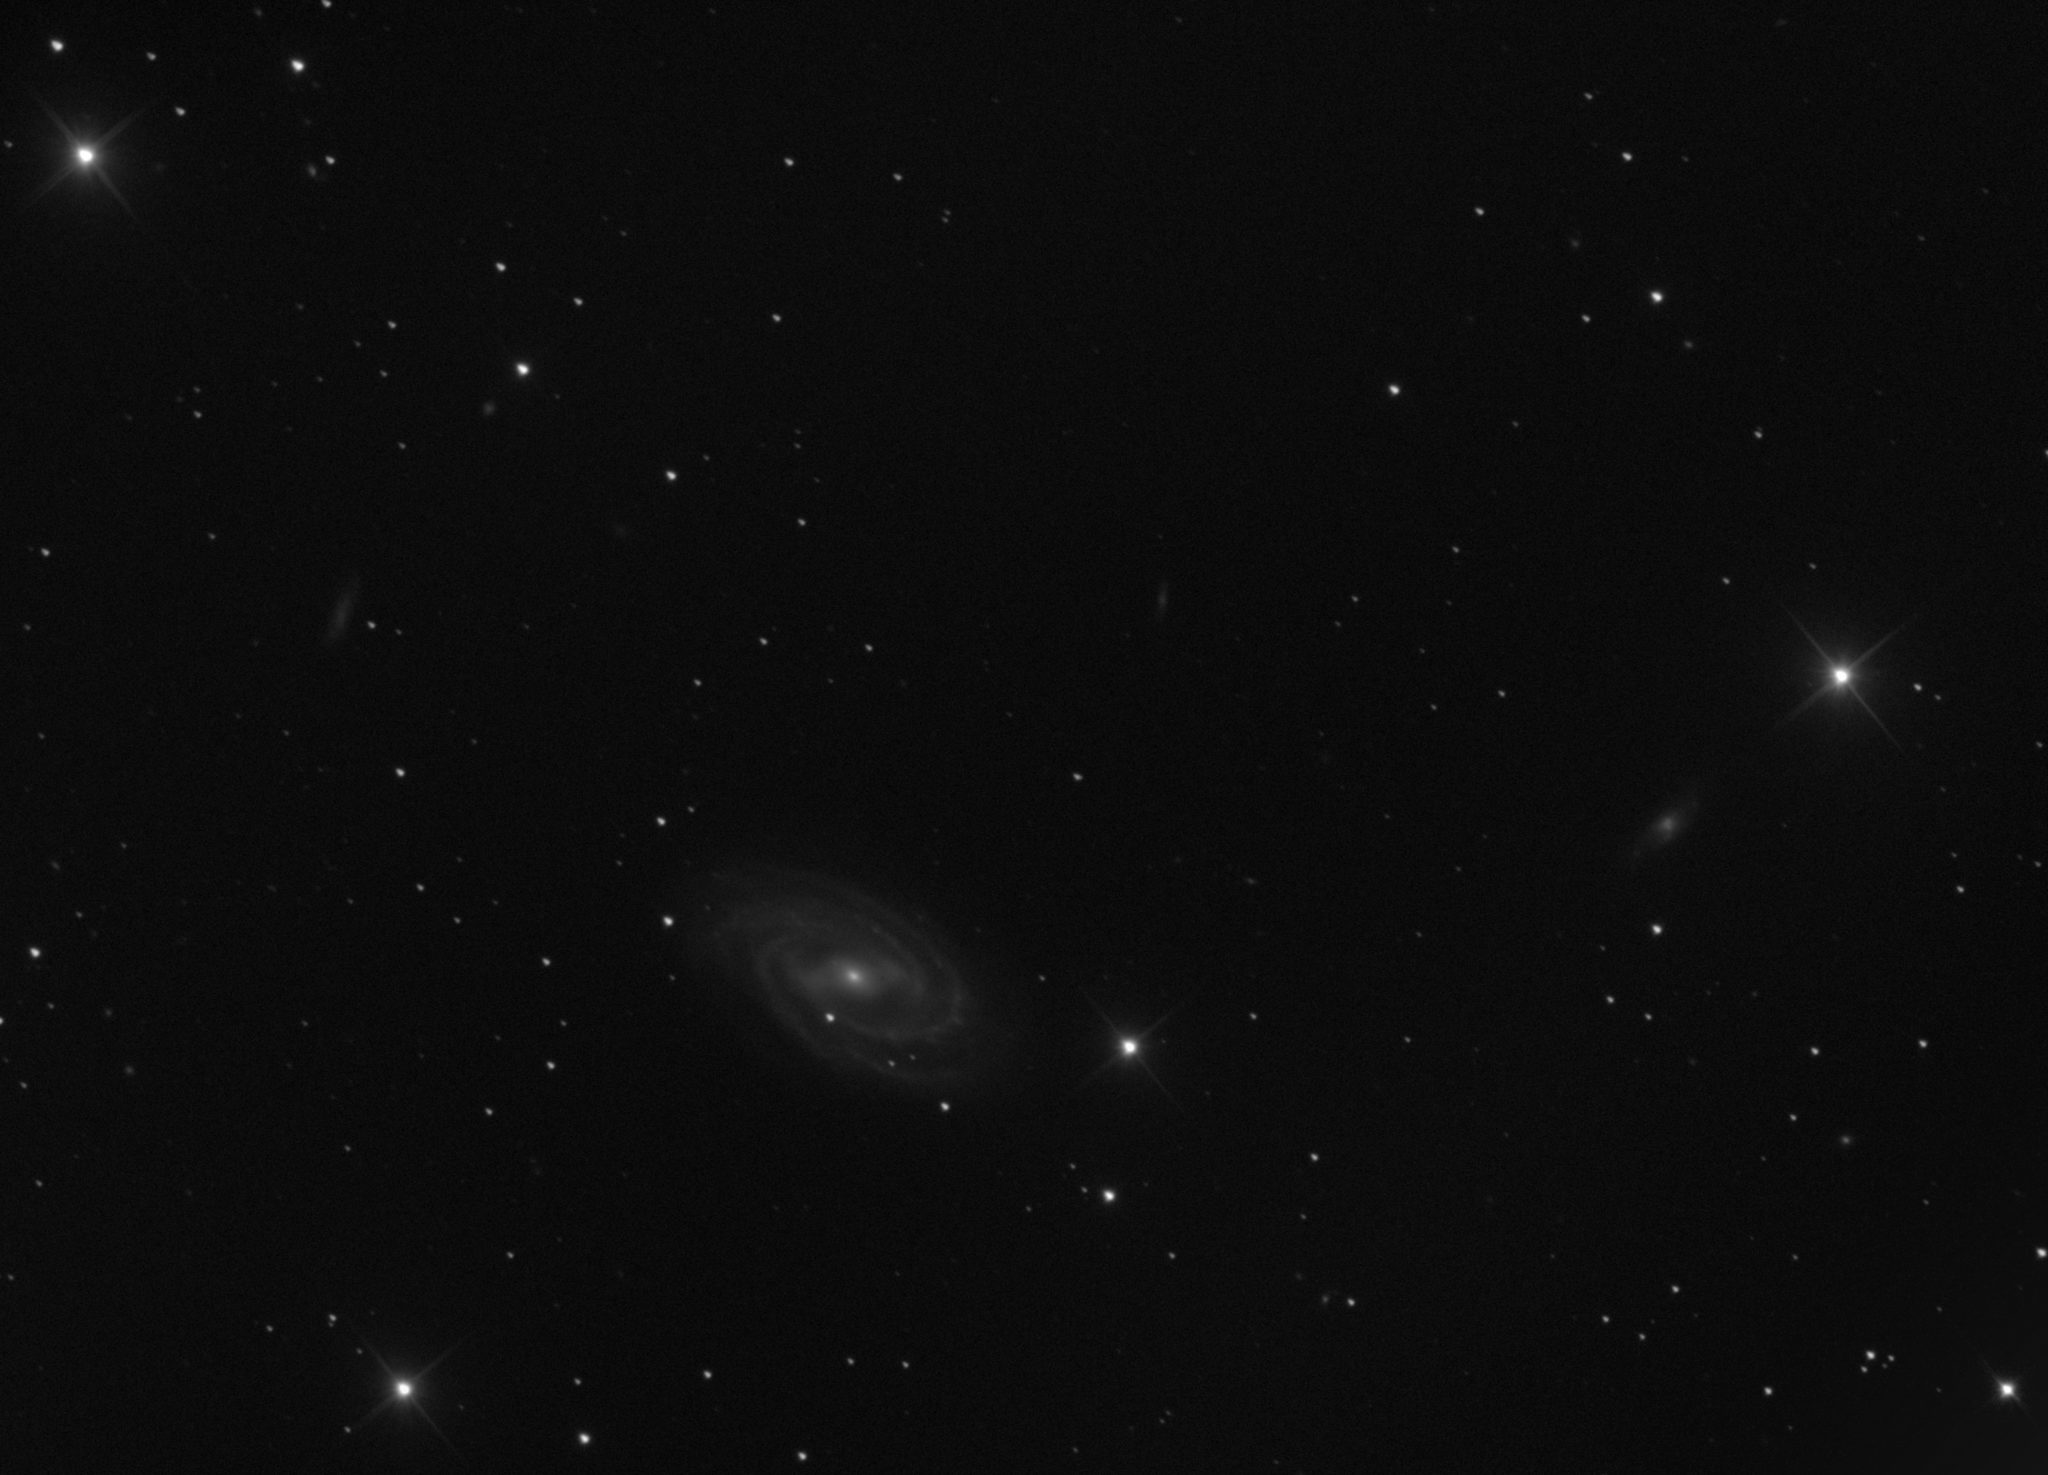 Messier 109 dans la Grande Ourse